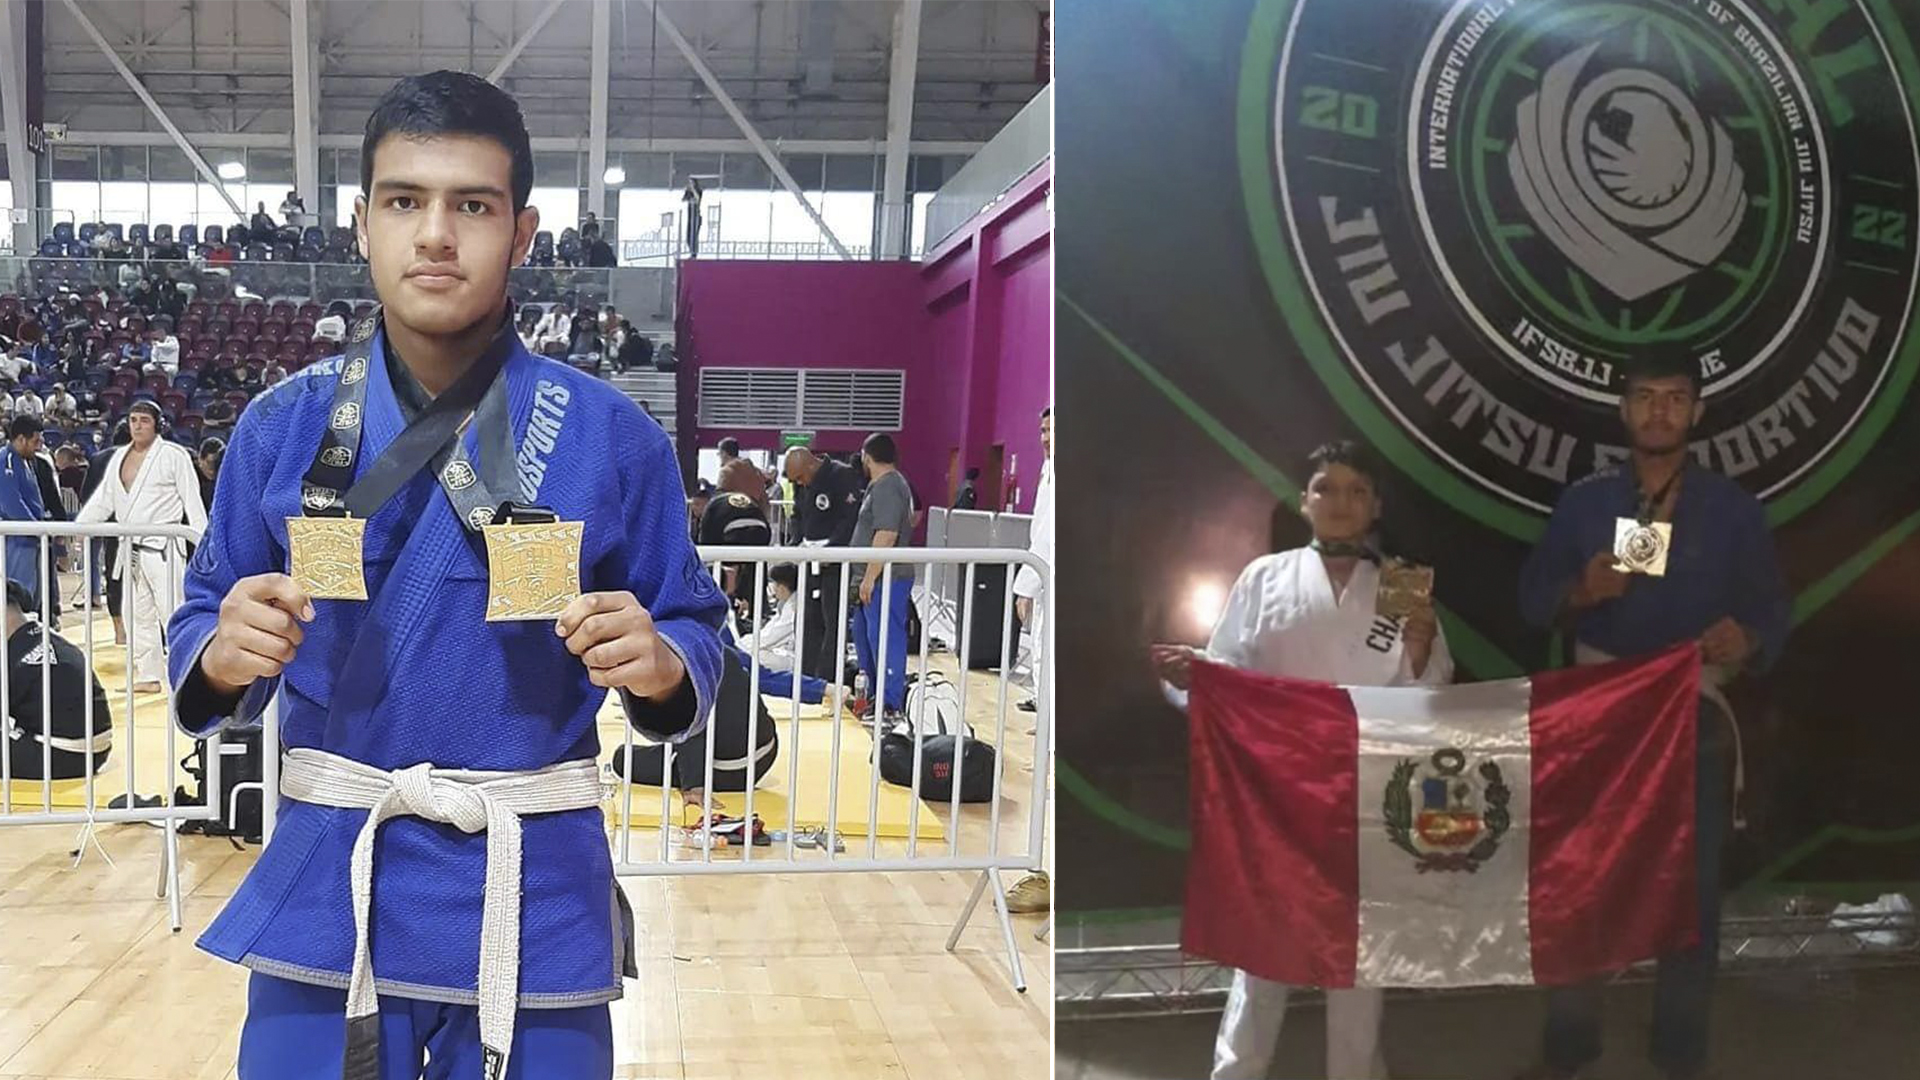 Campeones peruanos de jiu-jitsu se encuentran varados en Brasil a la espera de ayuda para retornar